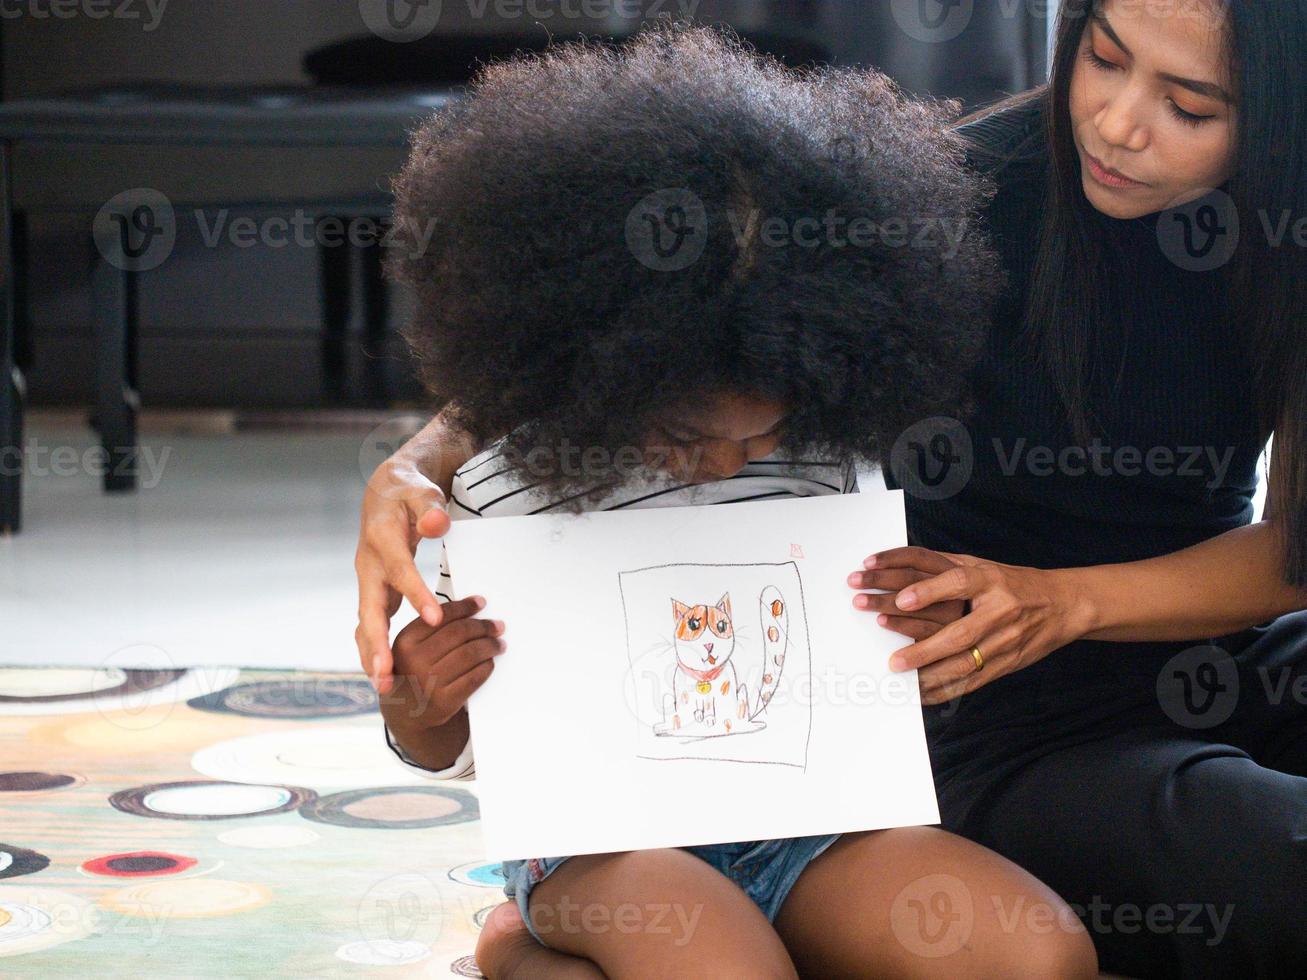 barn flicka son person kreativ idé teckning konst bild familj mor ung vuxenutbildning roligt njut visa papper glad leende svart afrikansk person inomhus hem hus måla tillsammans kärlek aktivitet foto